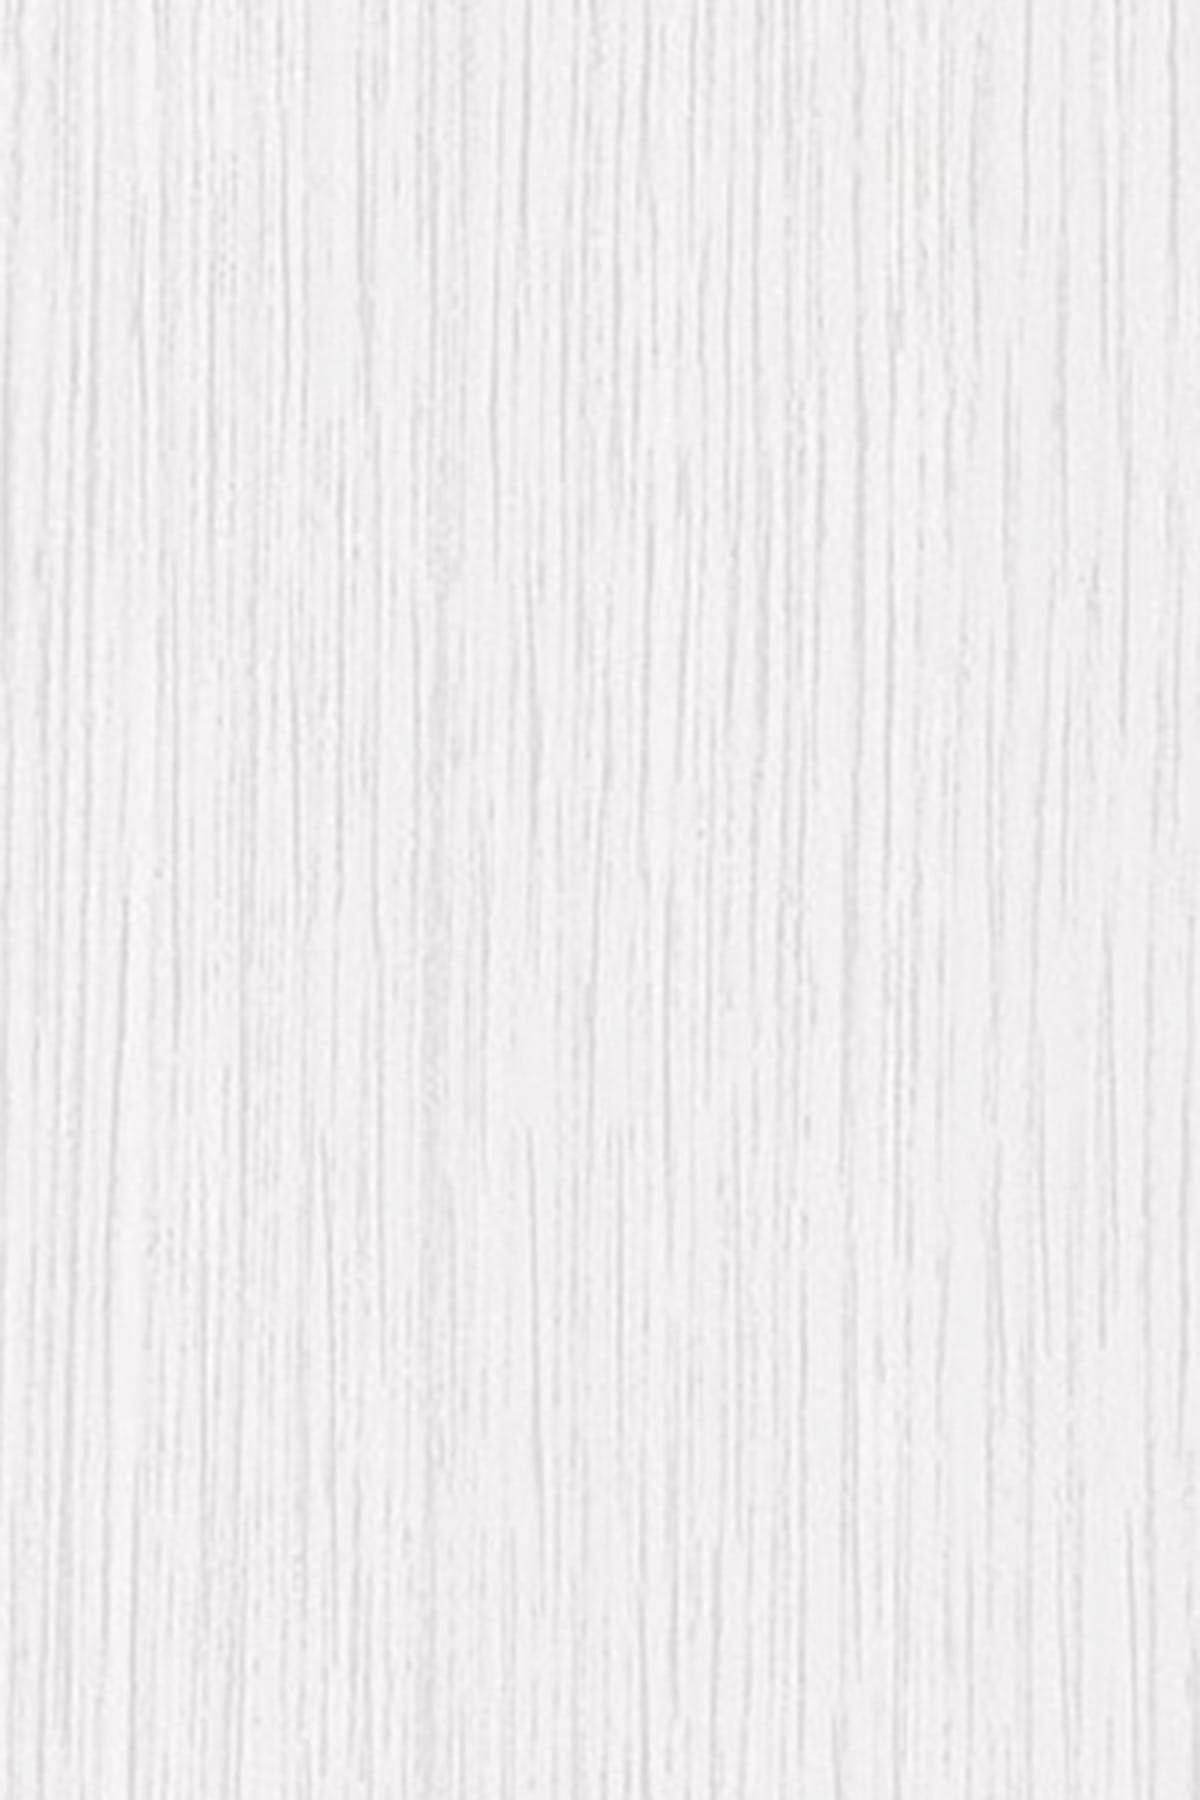 Gekkofix Kirli Beyaz Ahşap Yapışkanlı Folyo Dc200-8166